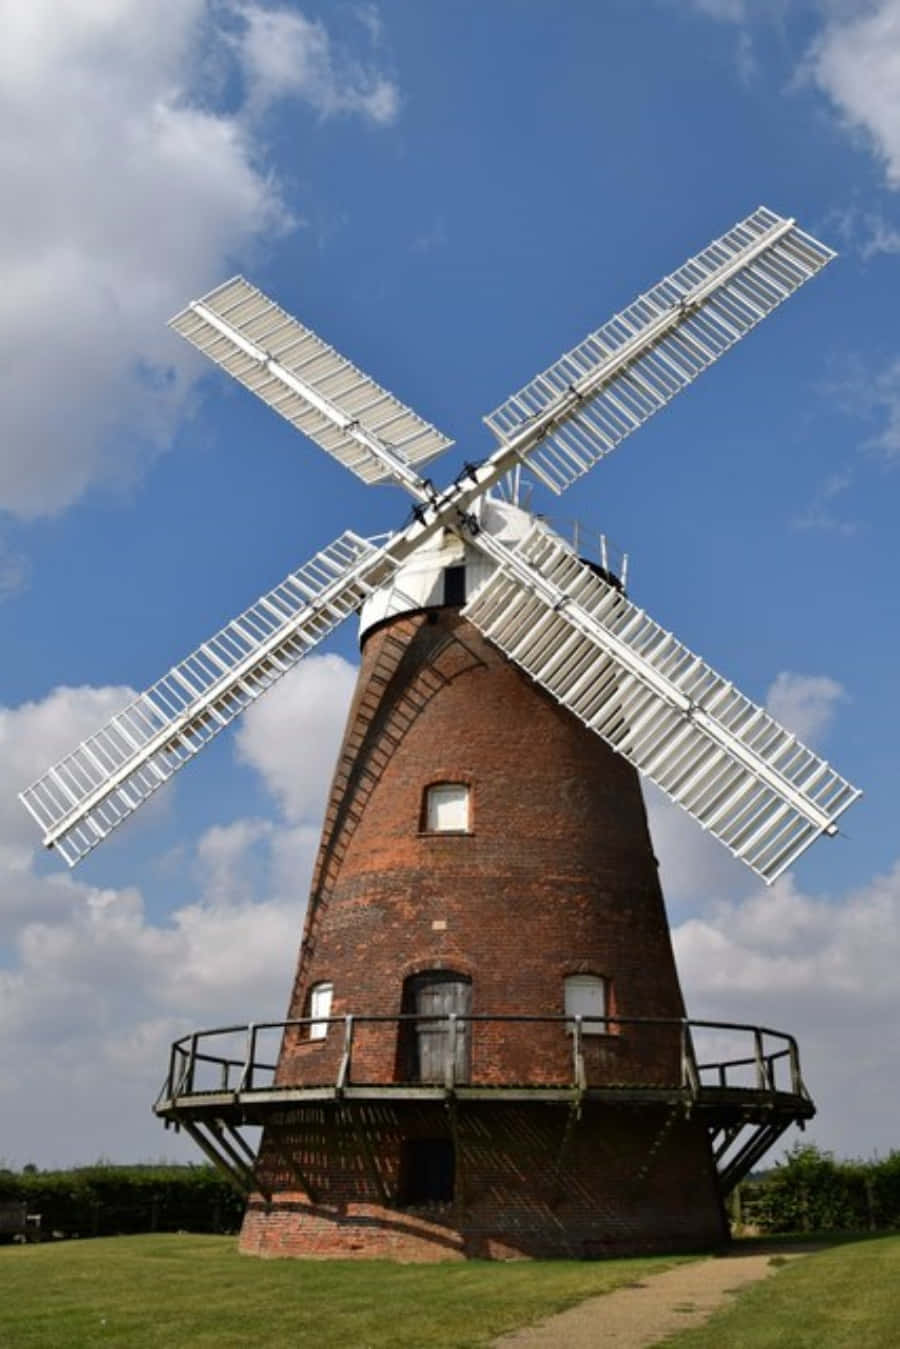 A Windmill In A Field